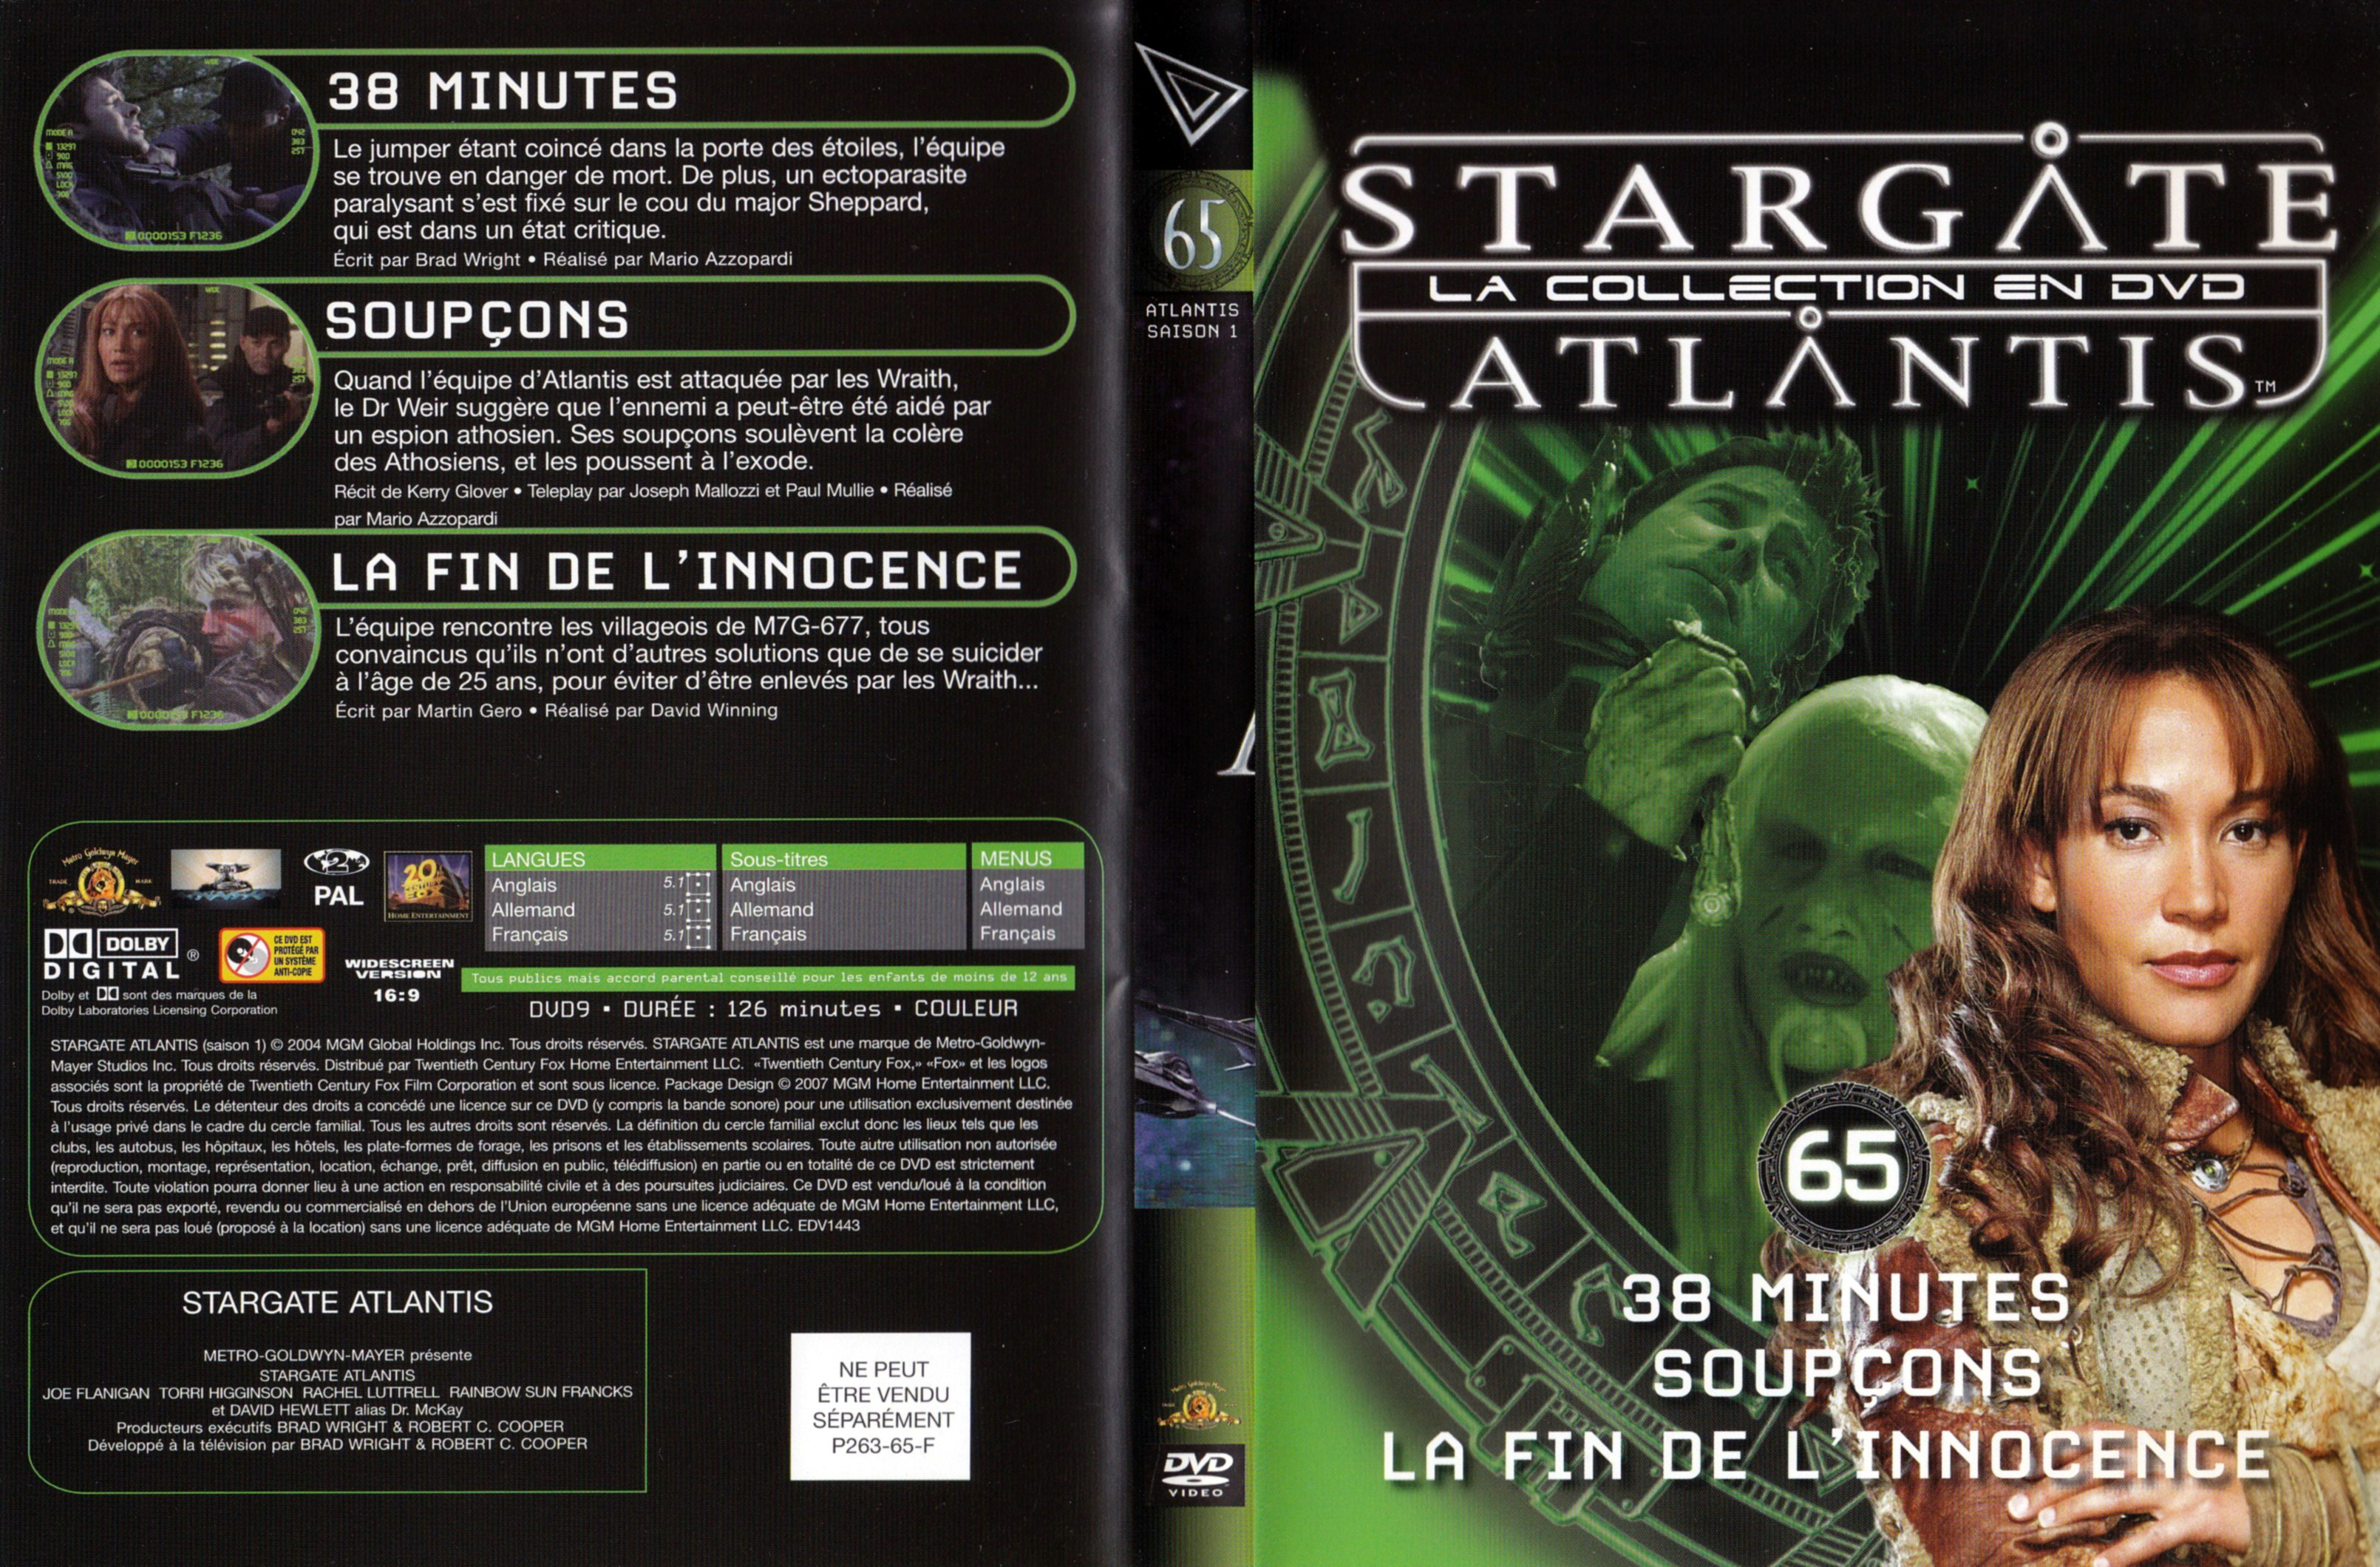 Jaquette DVD Stargate SG1 Atlantis Saison 1 vol 65